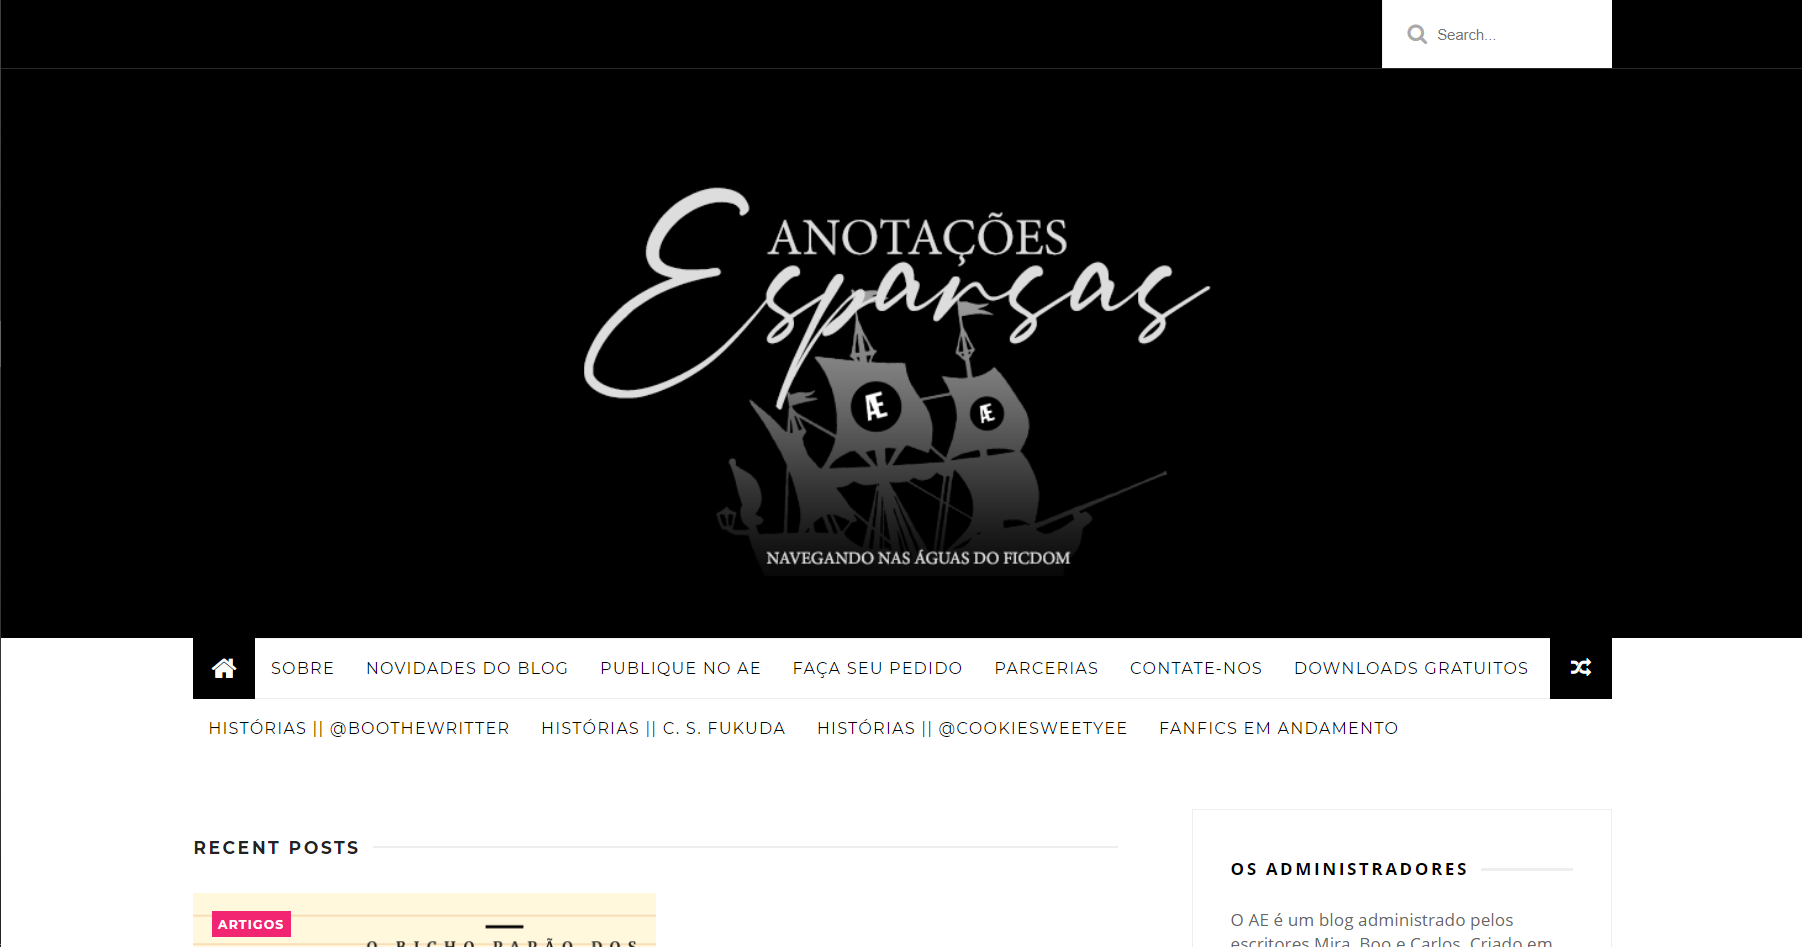 Imagem retangular preta e branca, mostrando a página inicial do website Anotações Esparsas em dezembro de 2020.